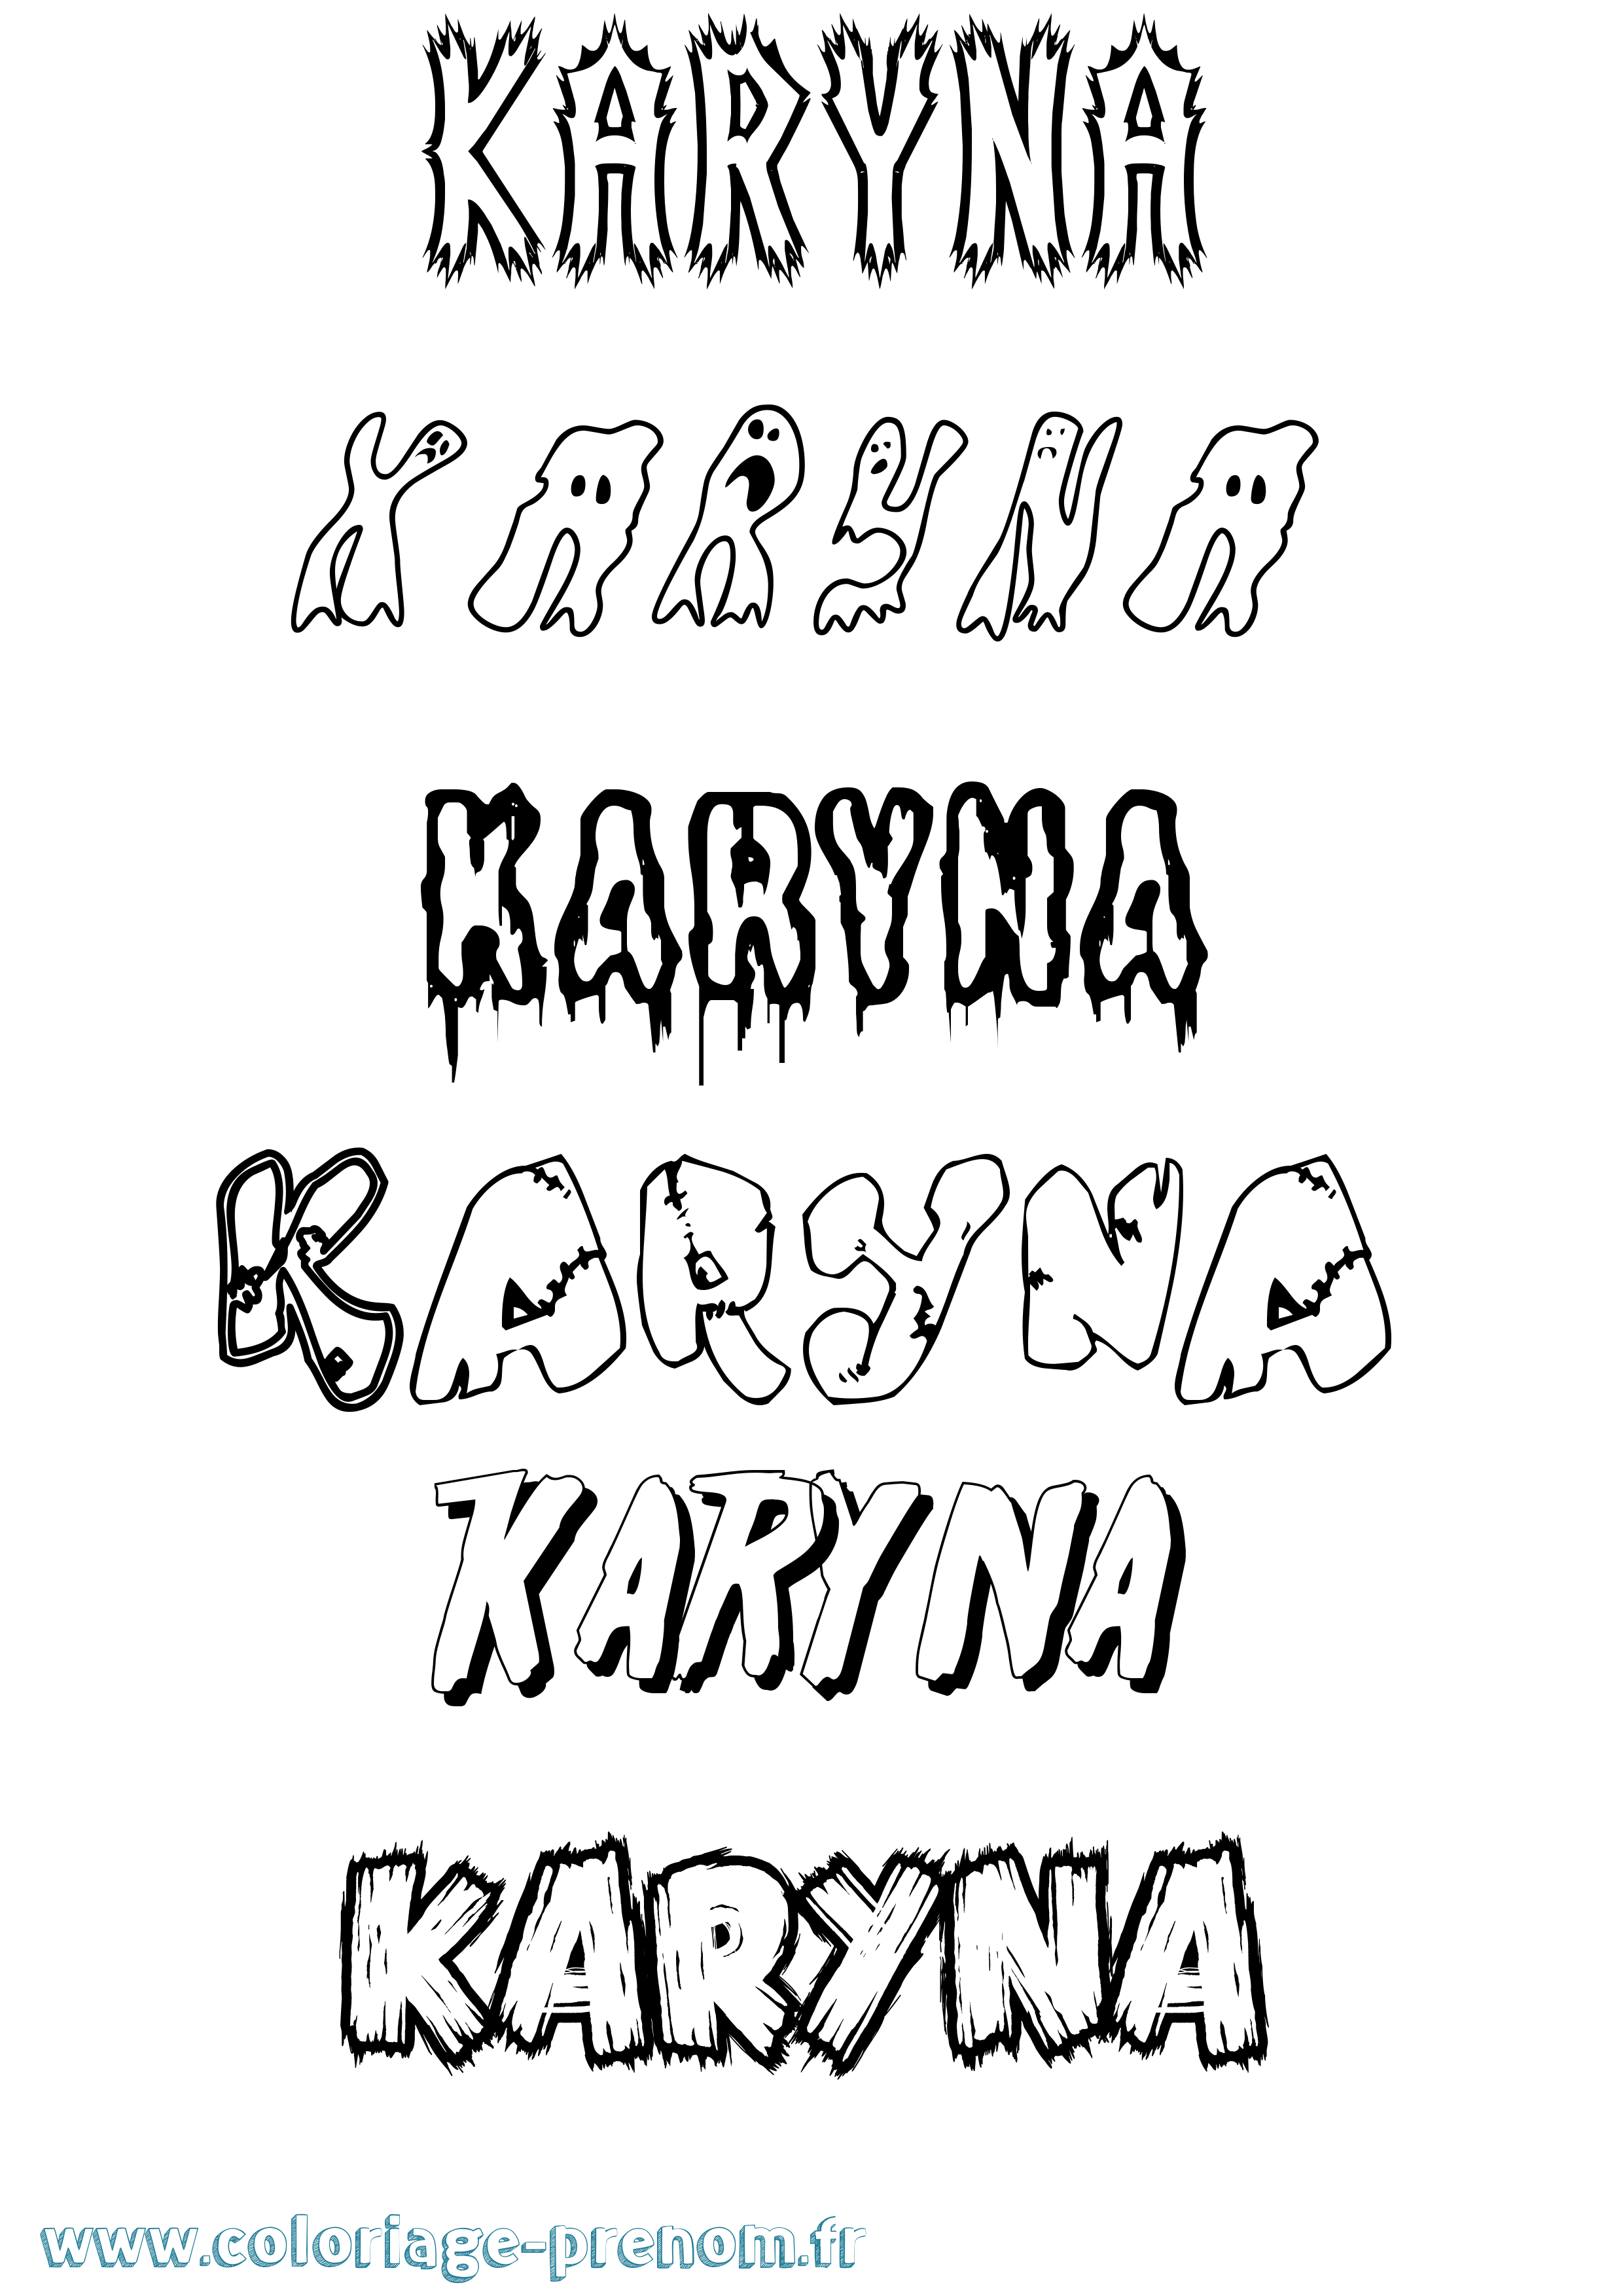 Coloriage prénom Karyna Frisson